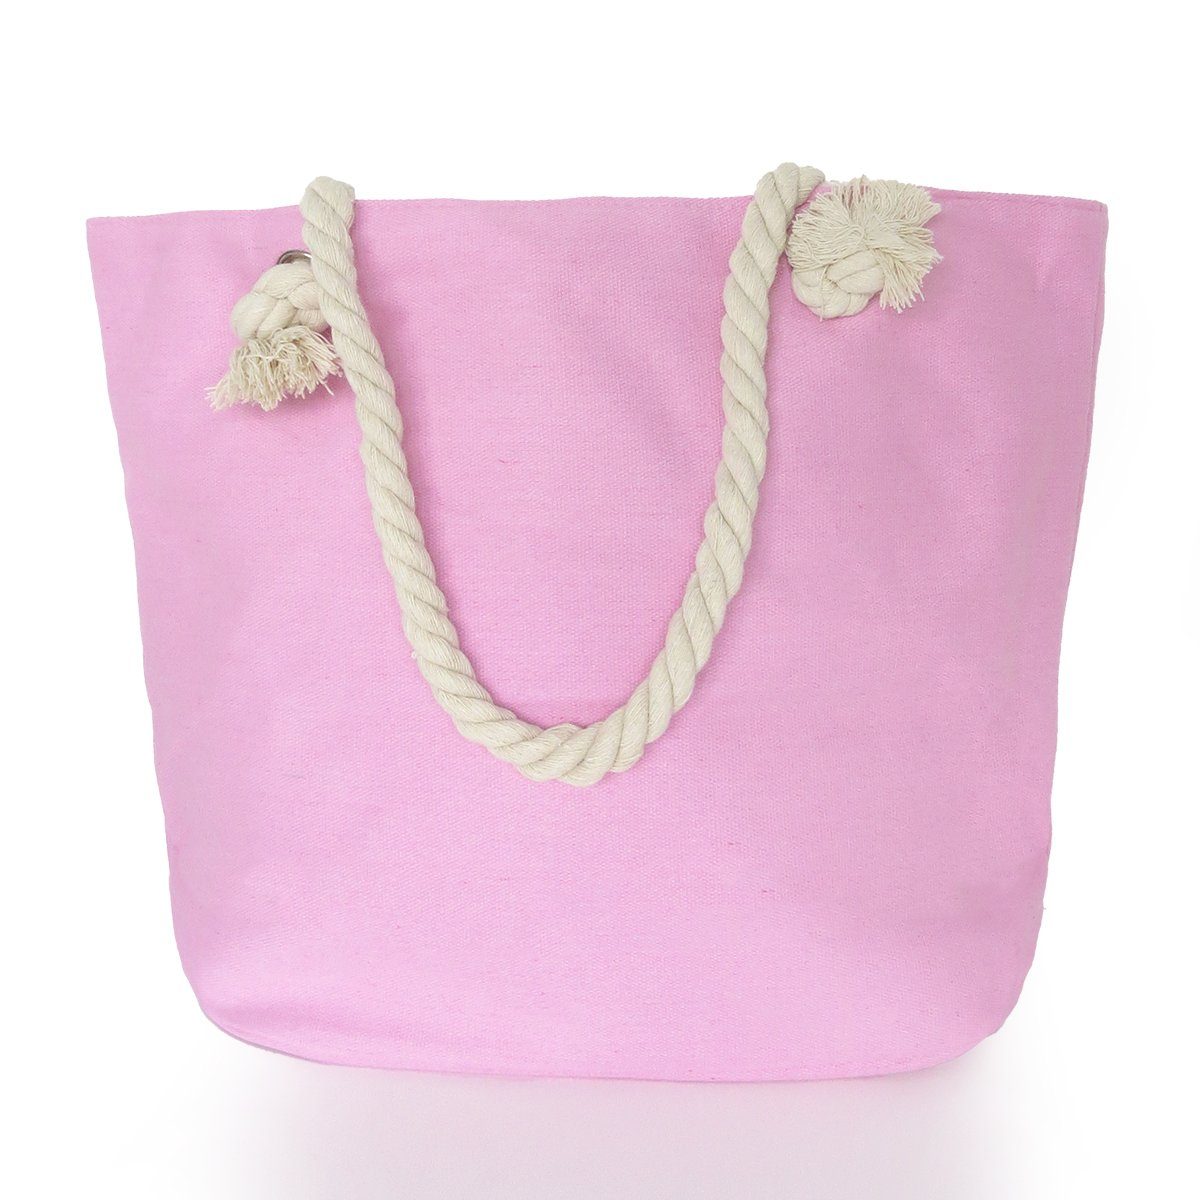 Sonia Originelli Reißverschluss rosa Shopper, Strandtasche kleine Innentasche Umhängetasche mit Sternaufdruck mit uni Seilkordeln